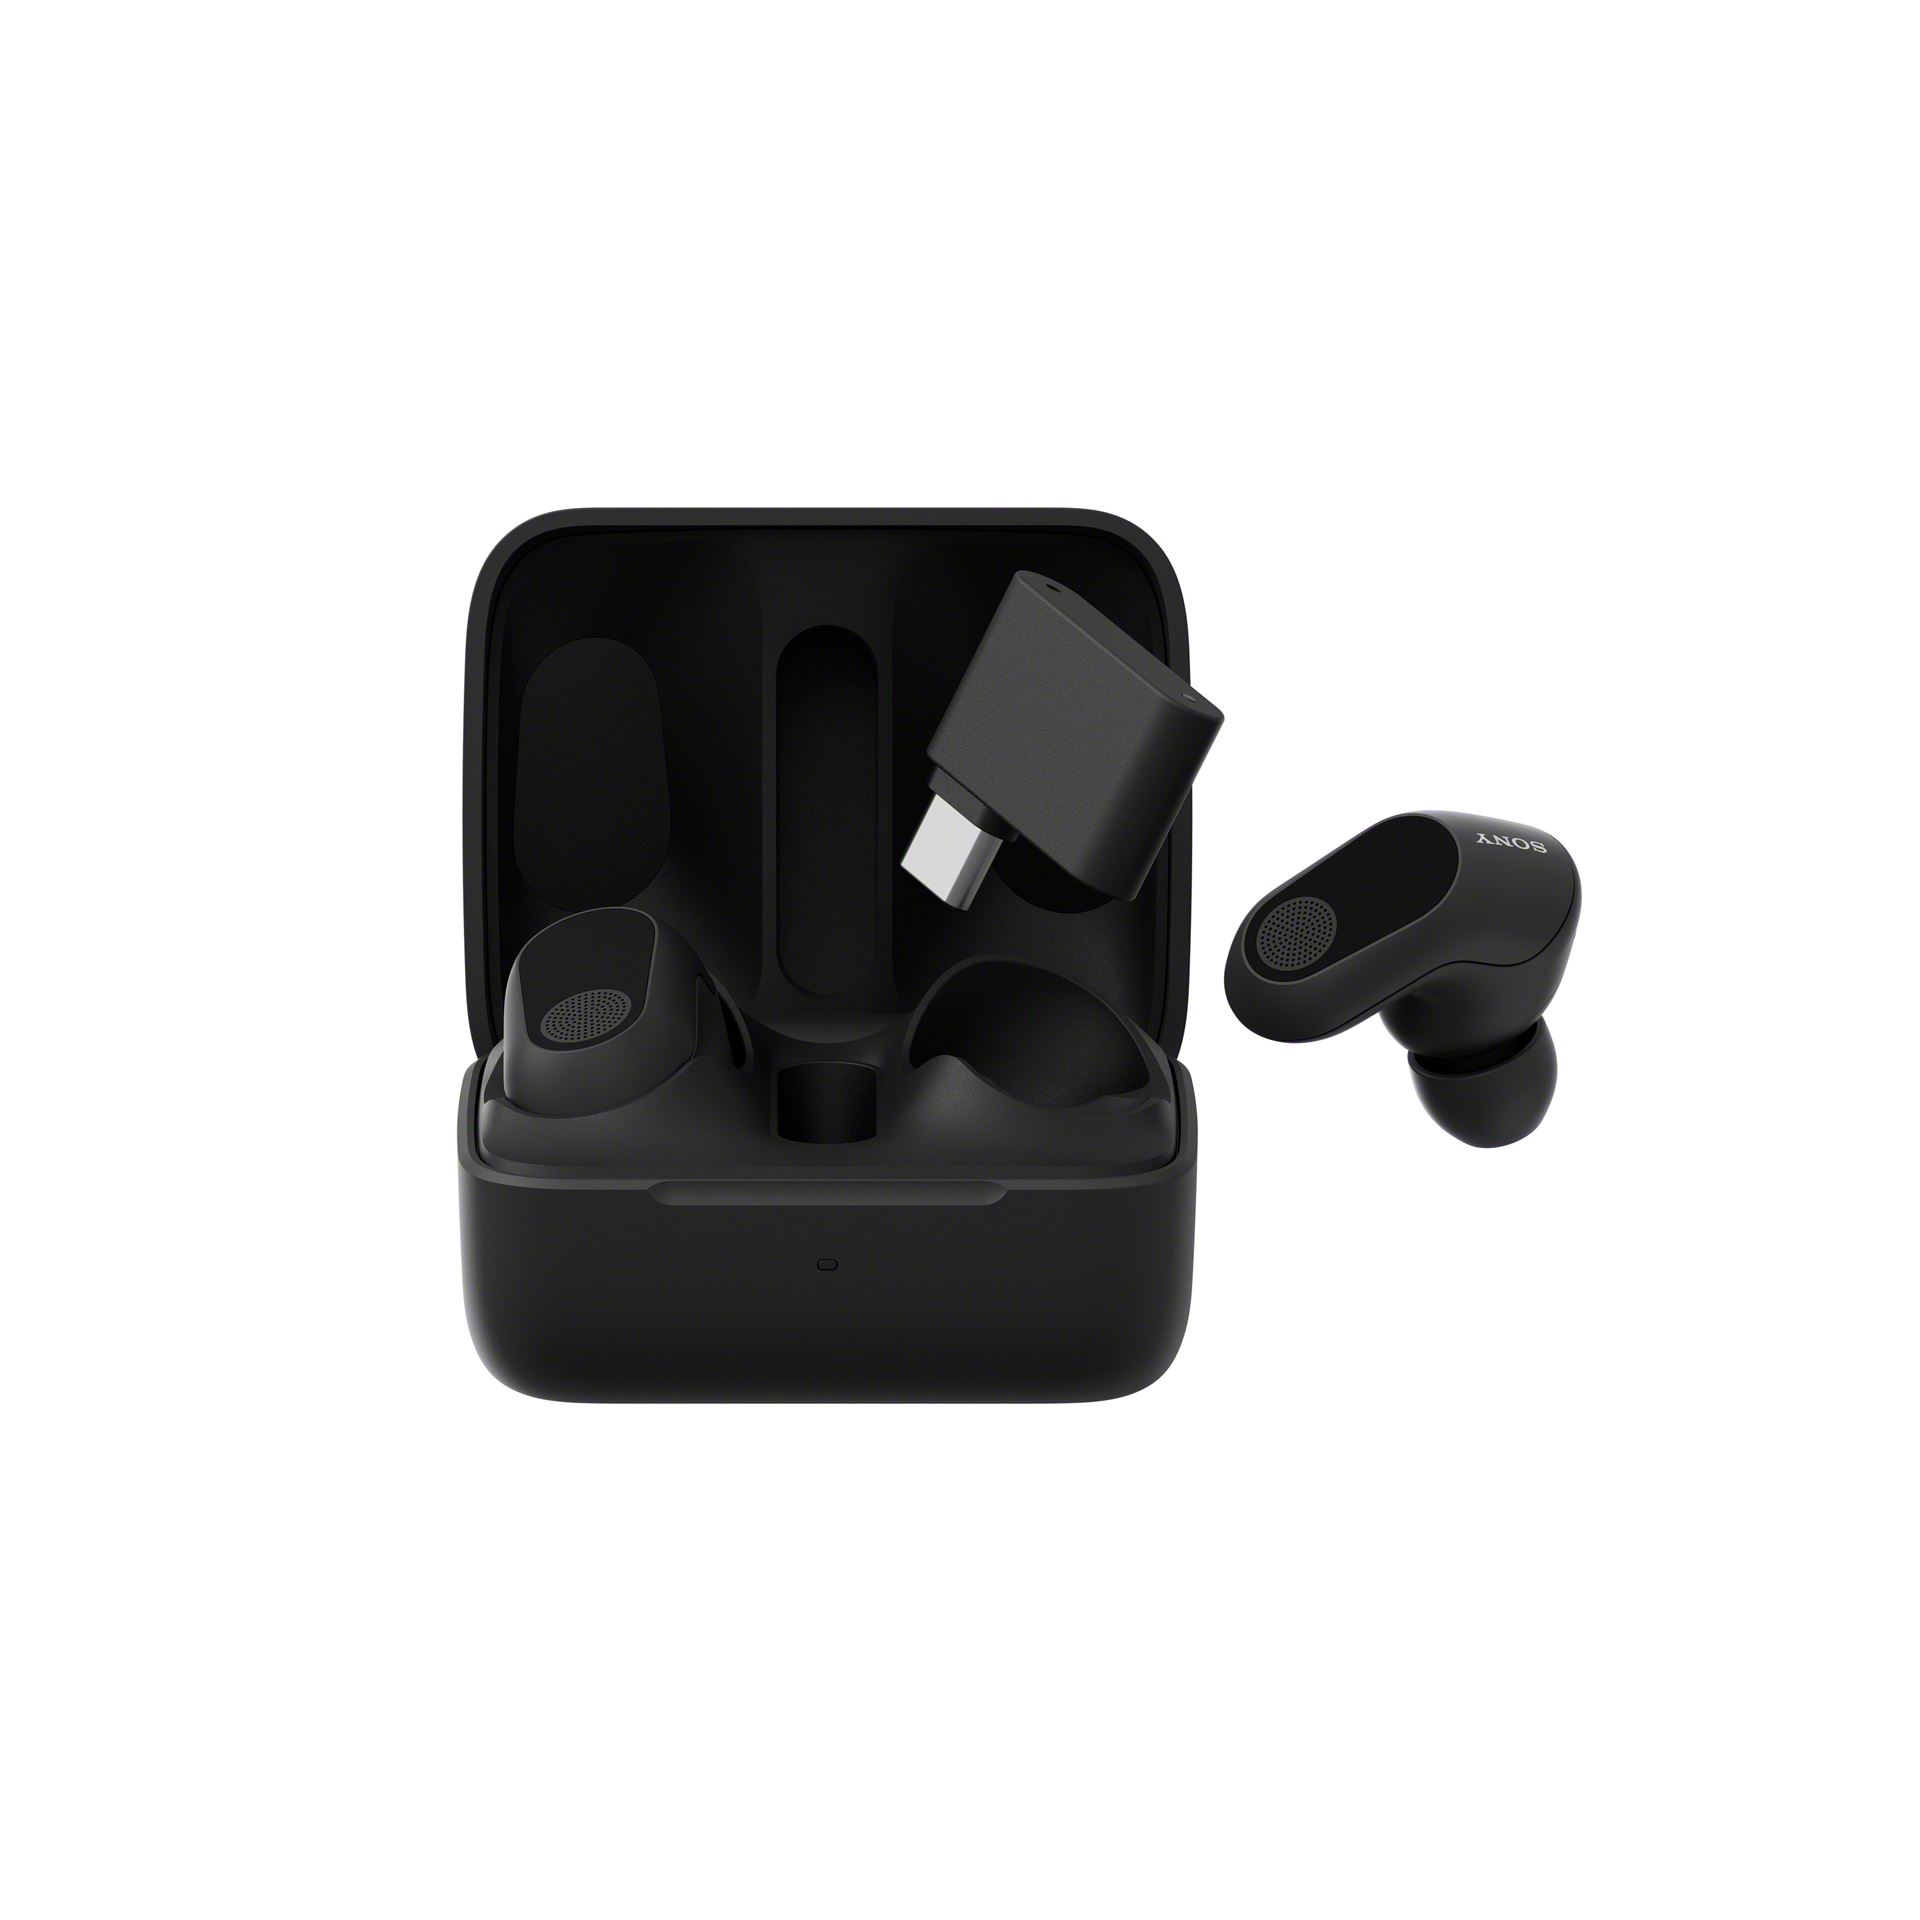 אוזניות גיימינג אלחוטיות כולל ביטול רעשים - צבע שחור INZONE Buds Wireless Noise Canceling Gaming Earbuds Black